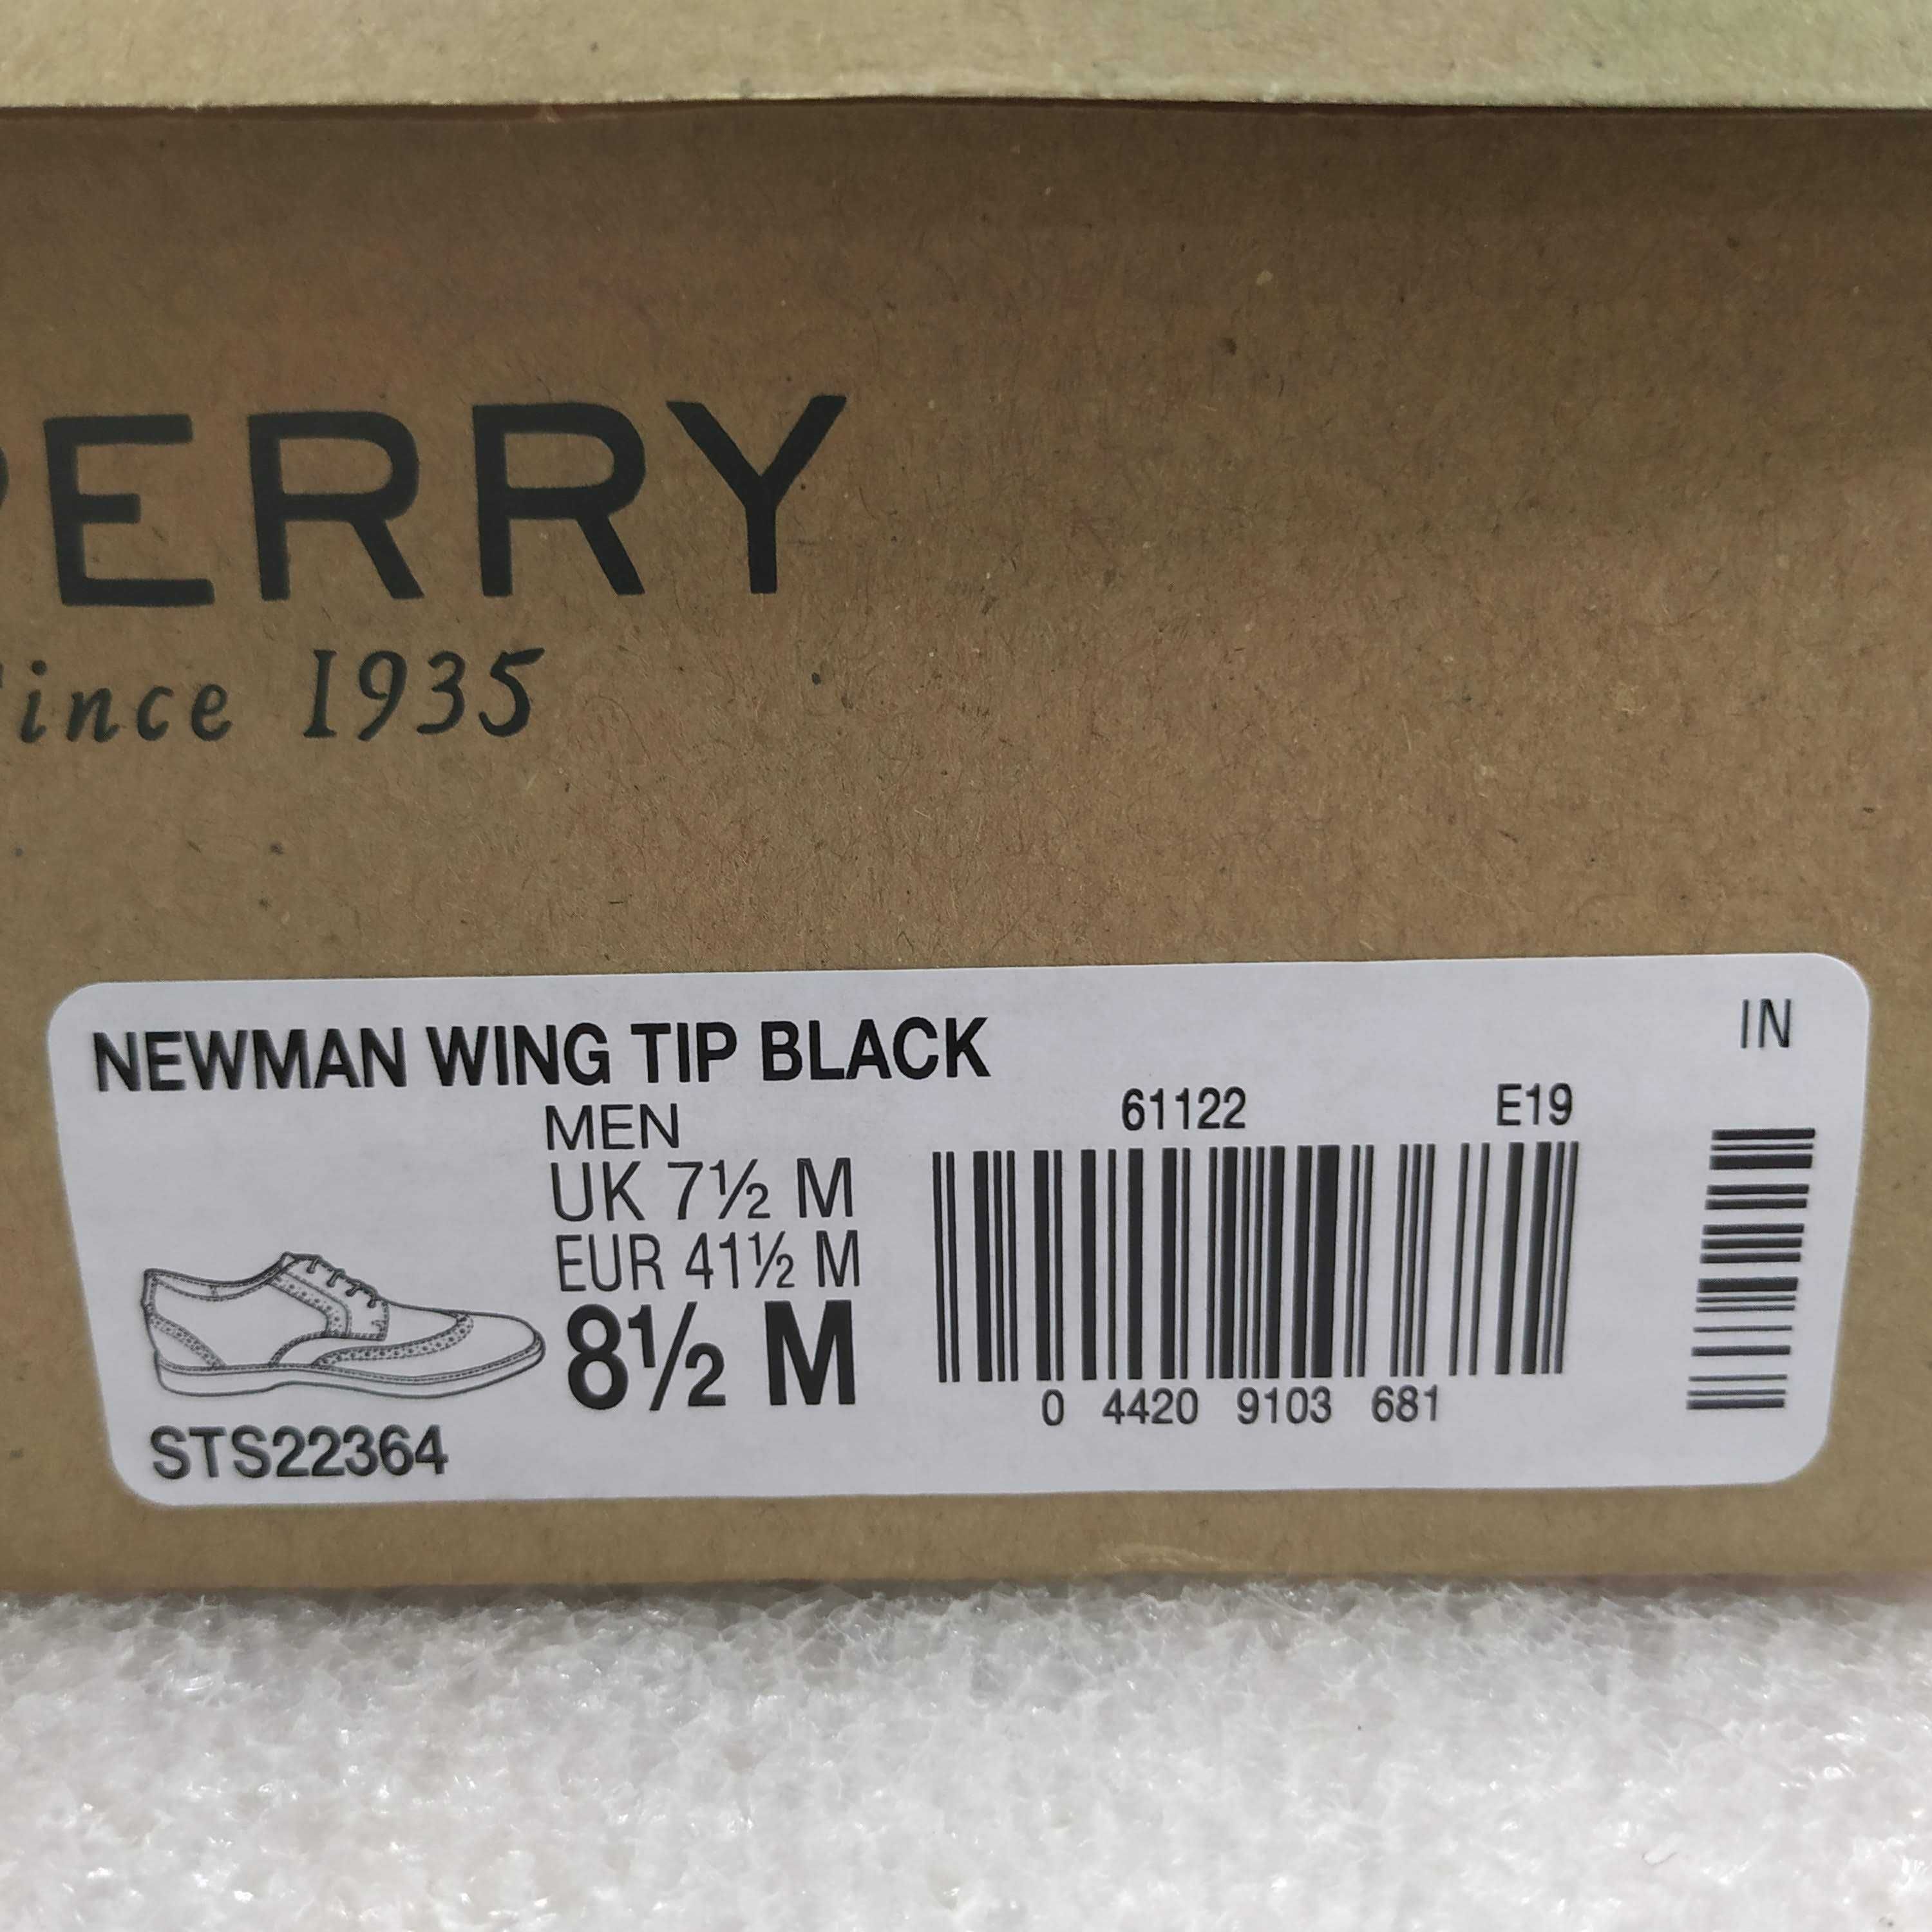 ДЕШЕВО!!! Туфли Sperry Newman Wing Tip Black Натуральная Кожа Оригинал